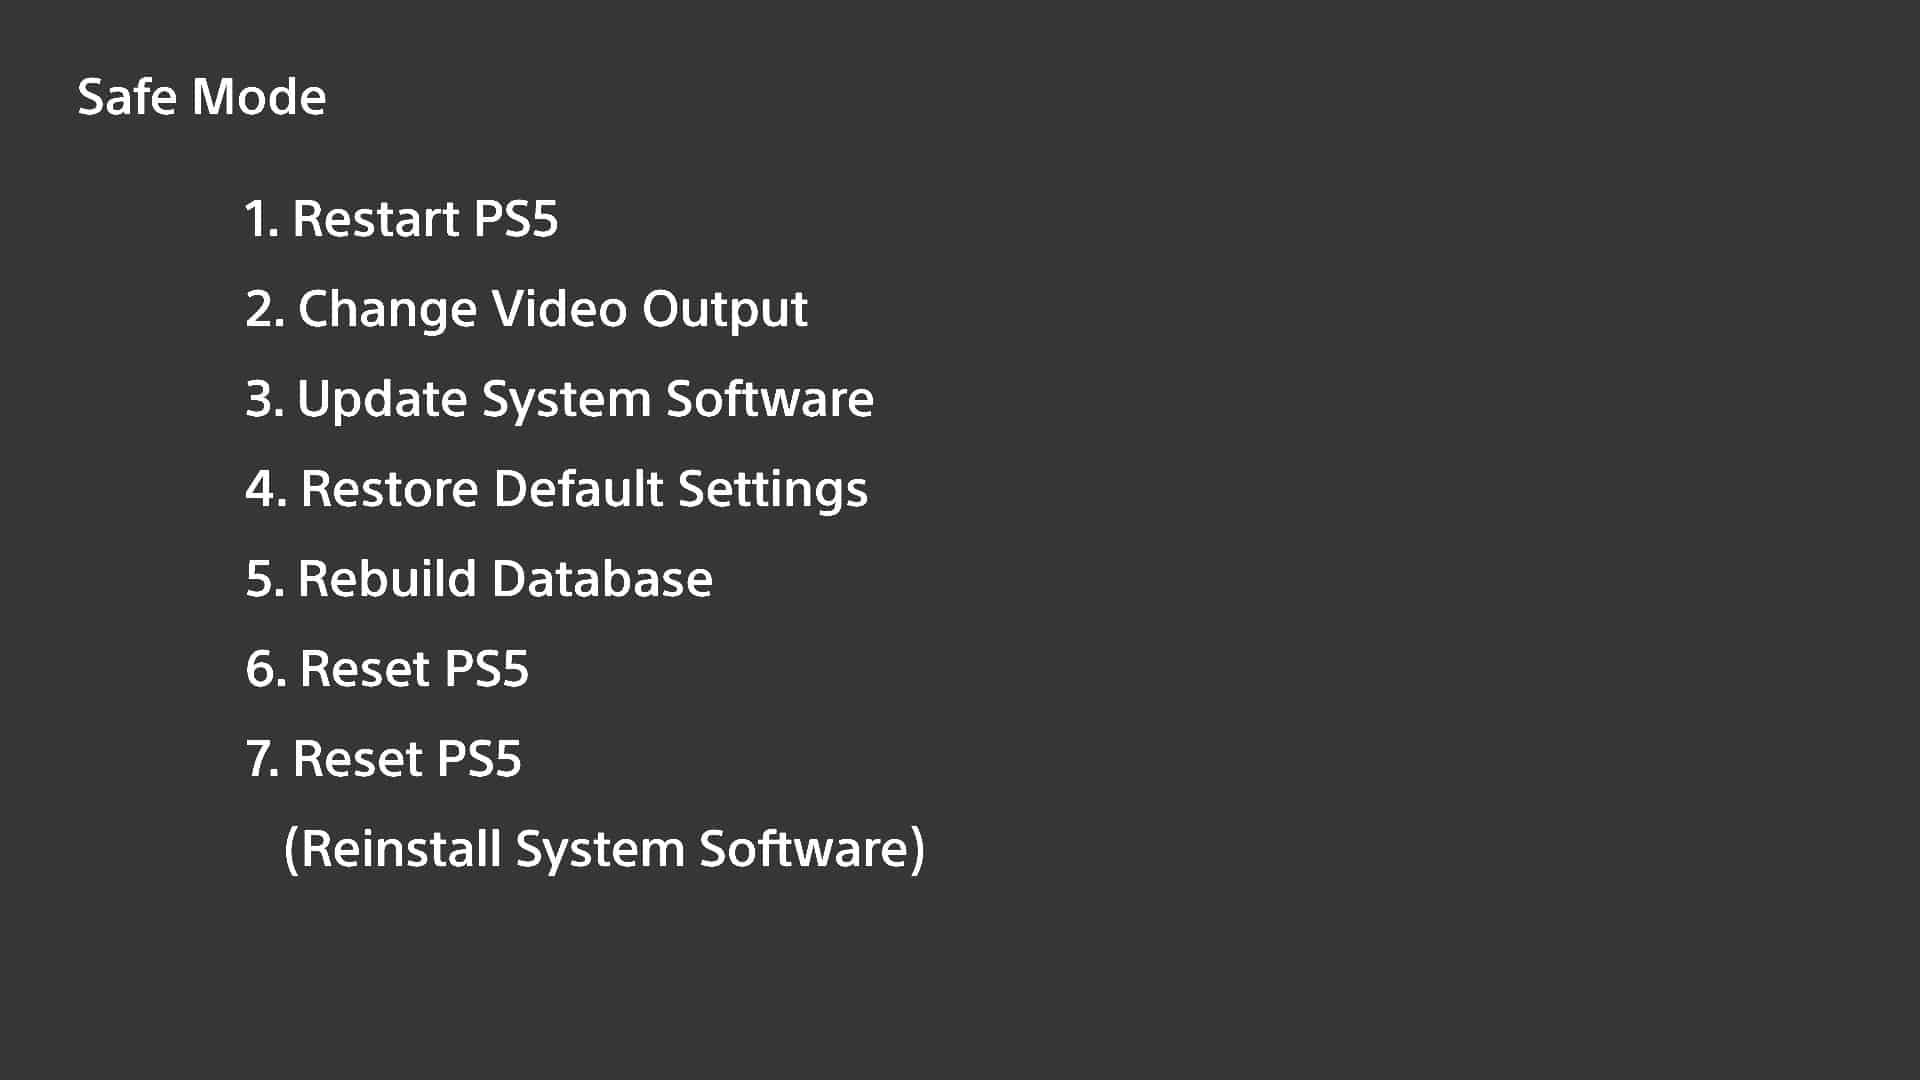 обновить системное программное обеспечение PS5 в безопасном режиме